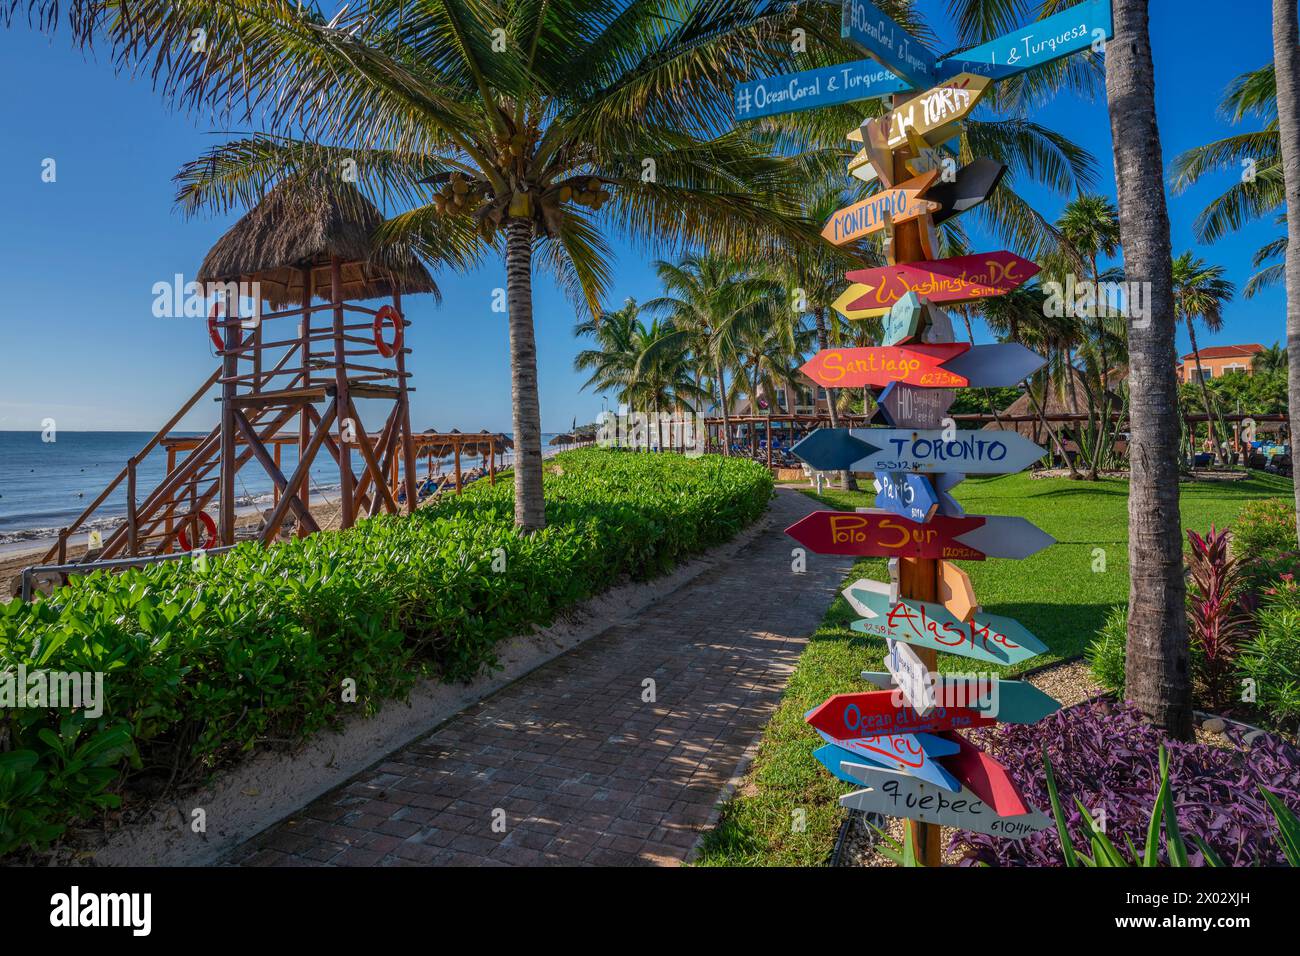 Blick auf die farbenfrohe Wegweiser in der Nähe von Puerto Morelos, Karibikküste, Yucatan Halbinsel, Mexiko, Nordamerika Stockfoto